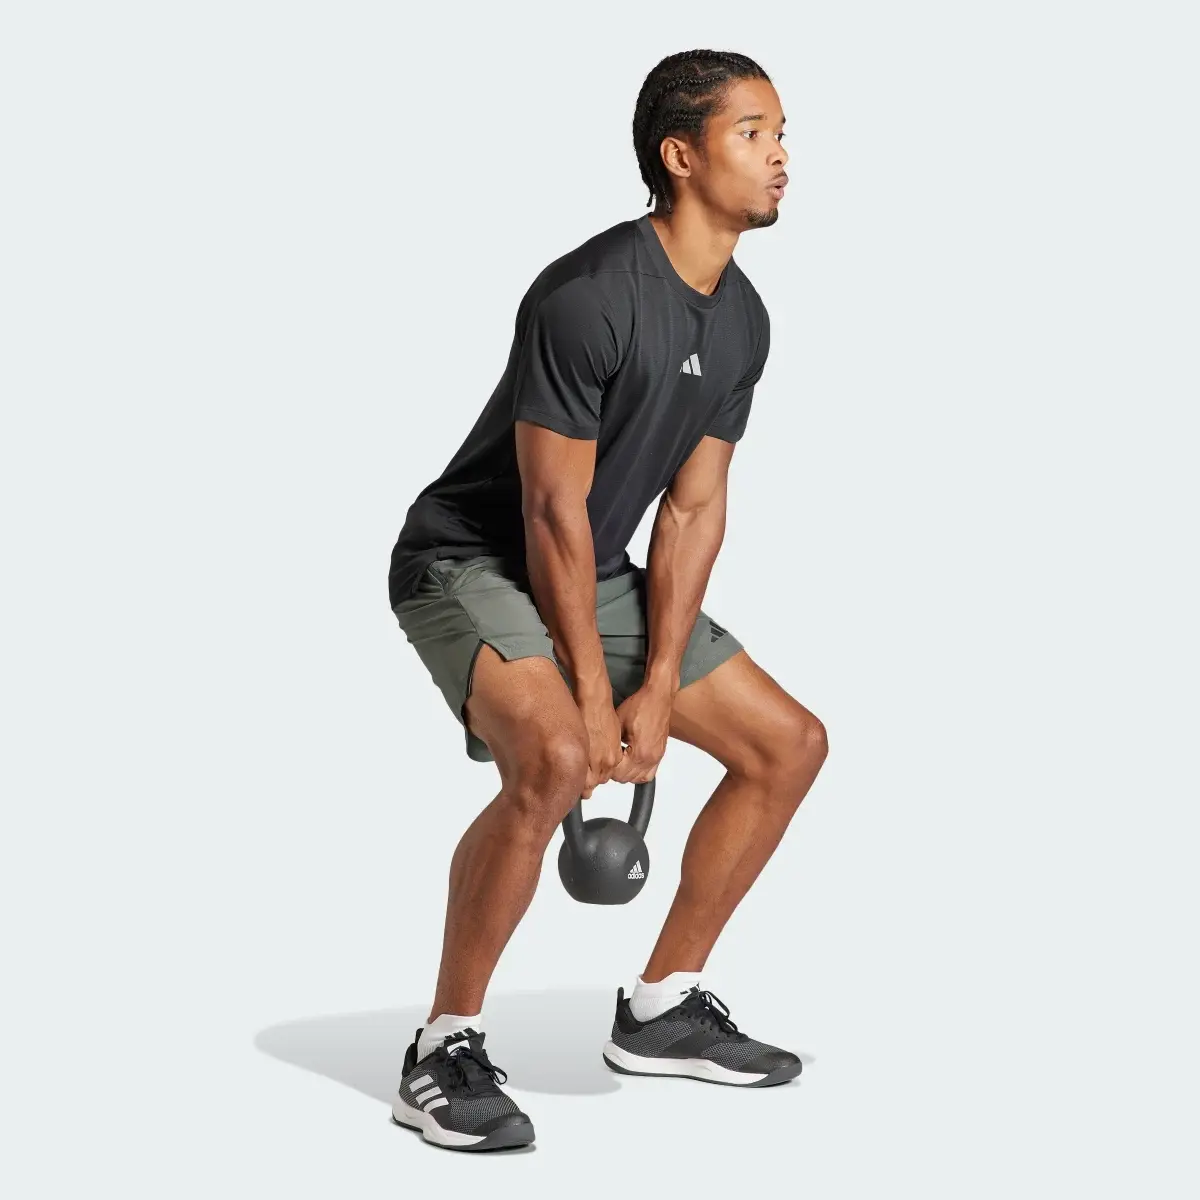 Adidas Designed for Training Workout Shorts. 3